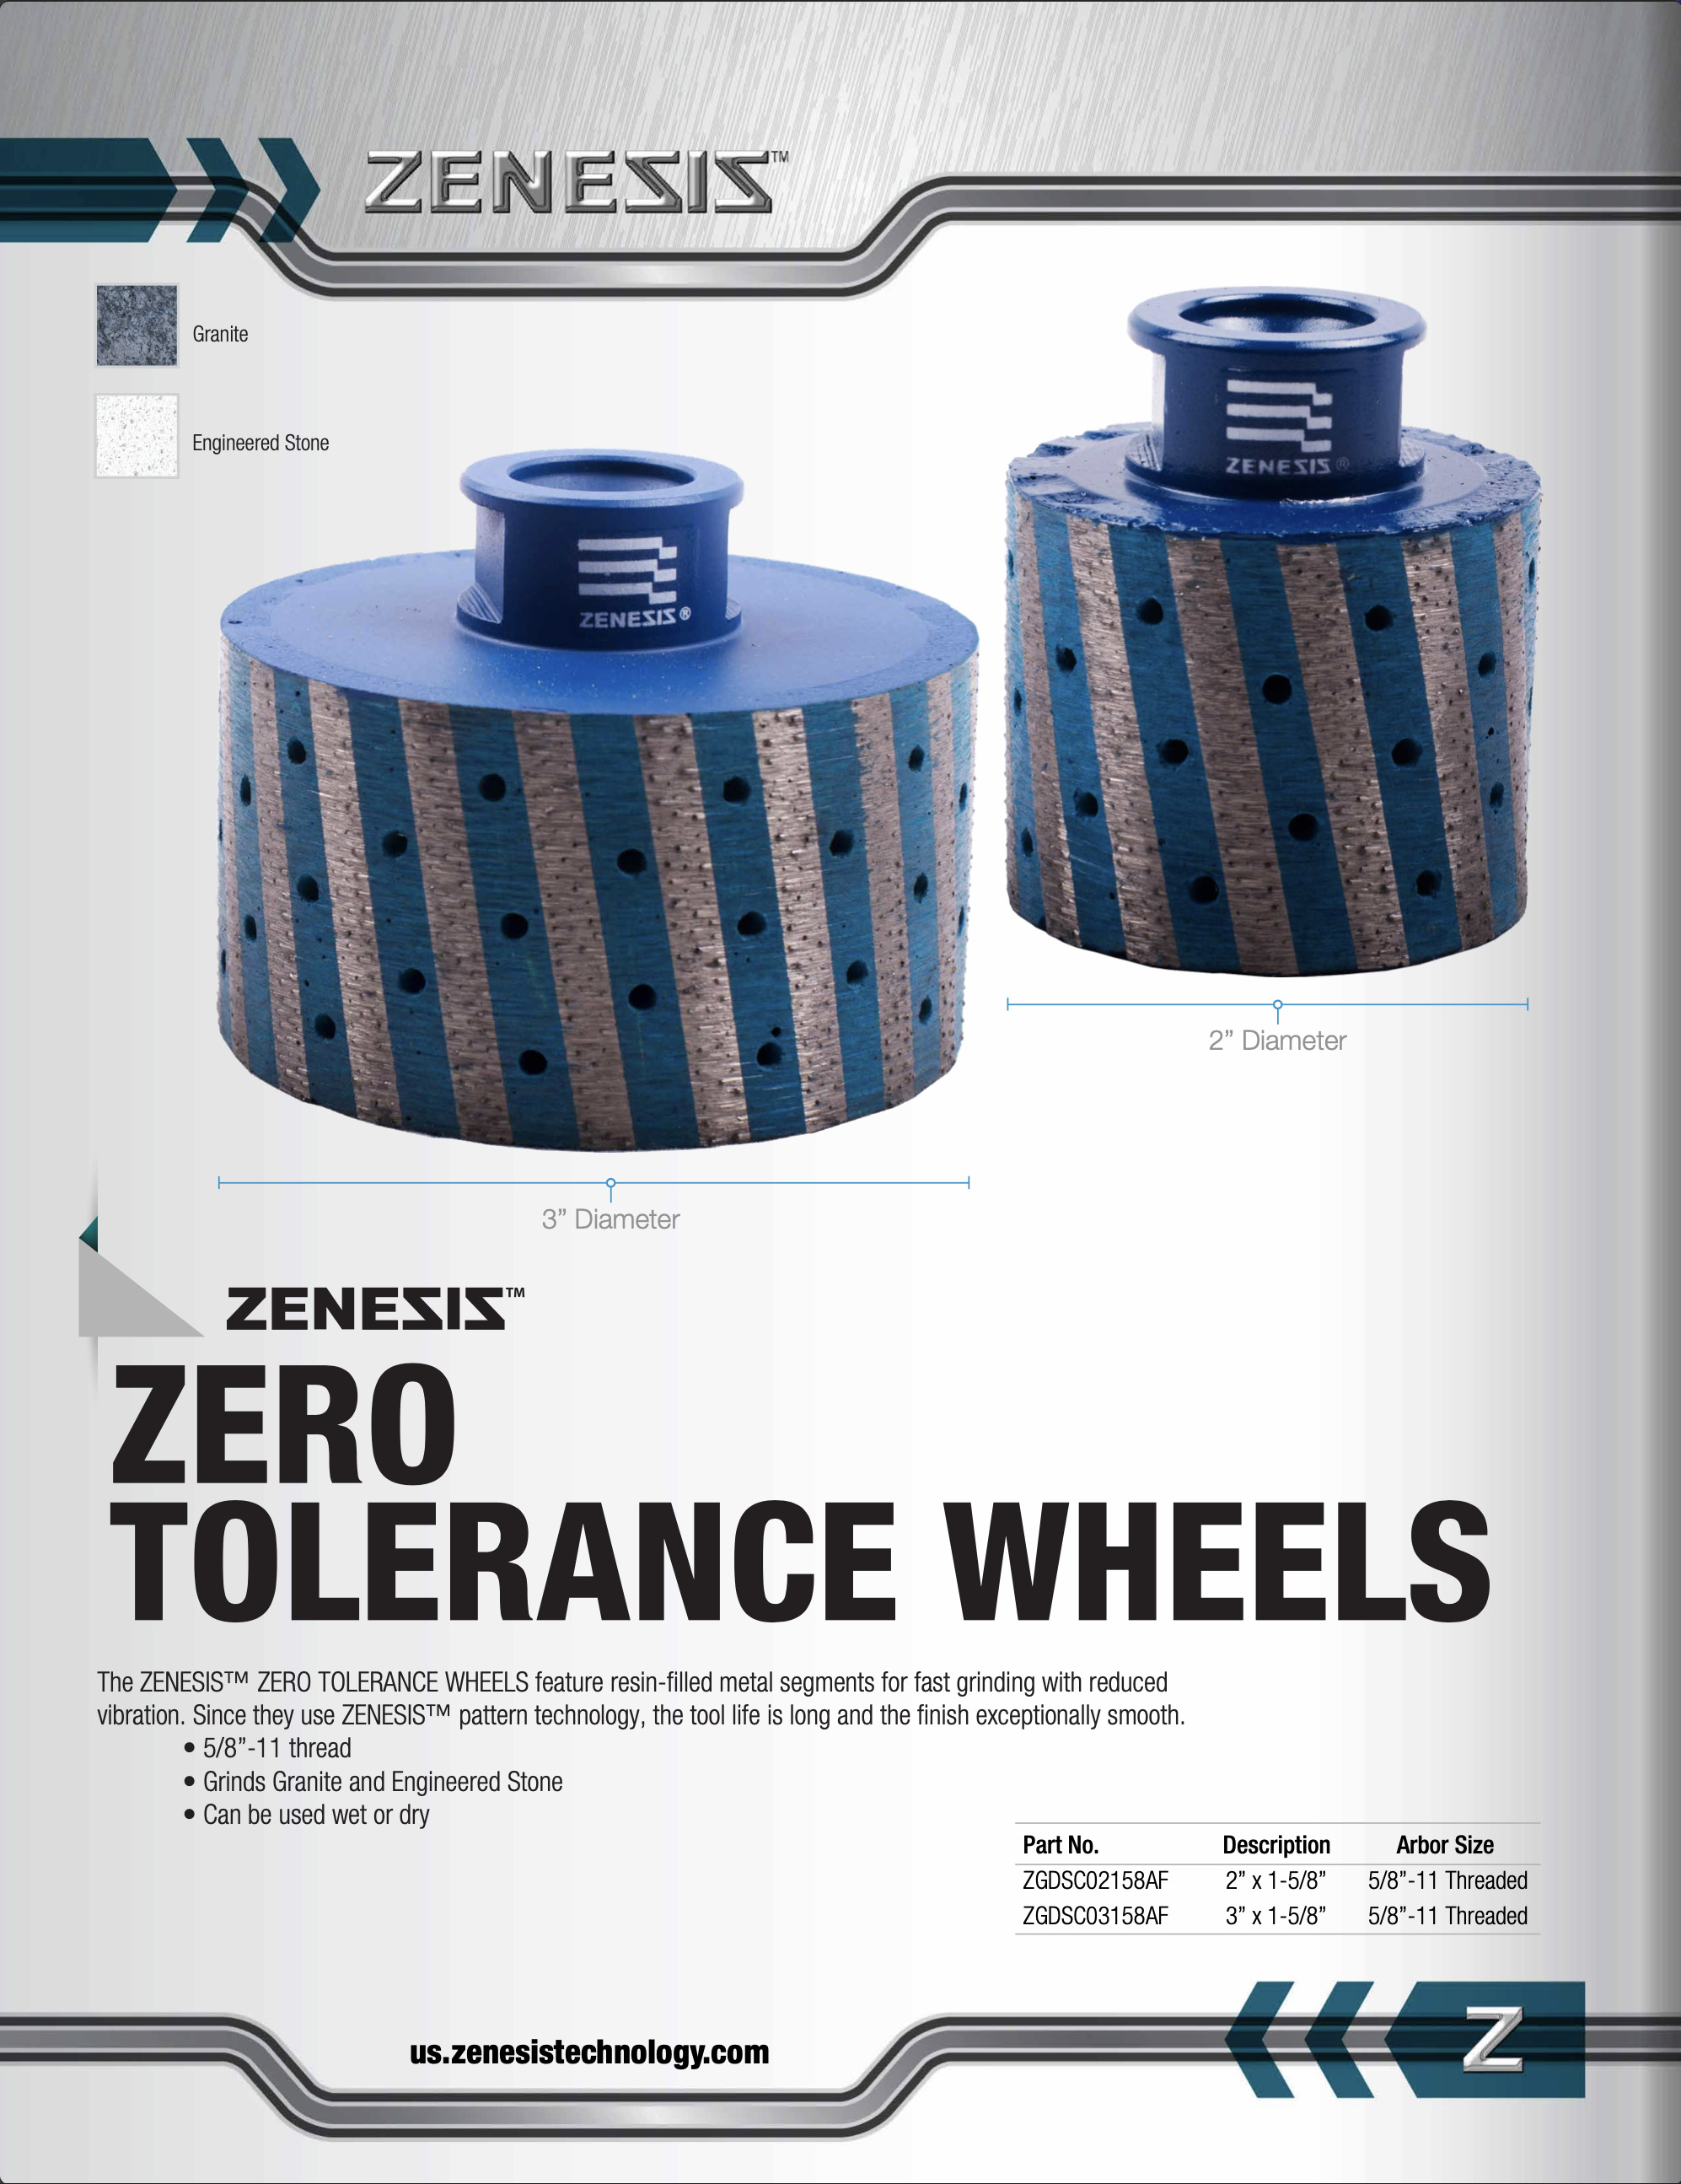 ZENESIS™ Zero Tolerance Wheels